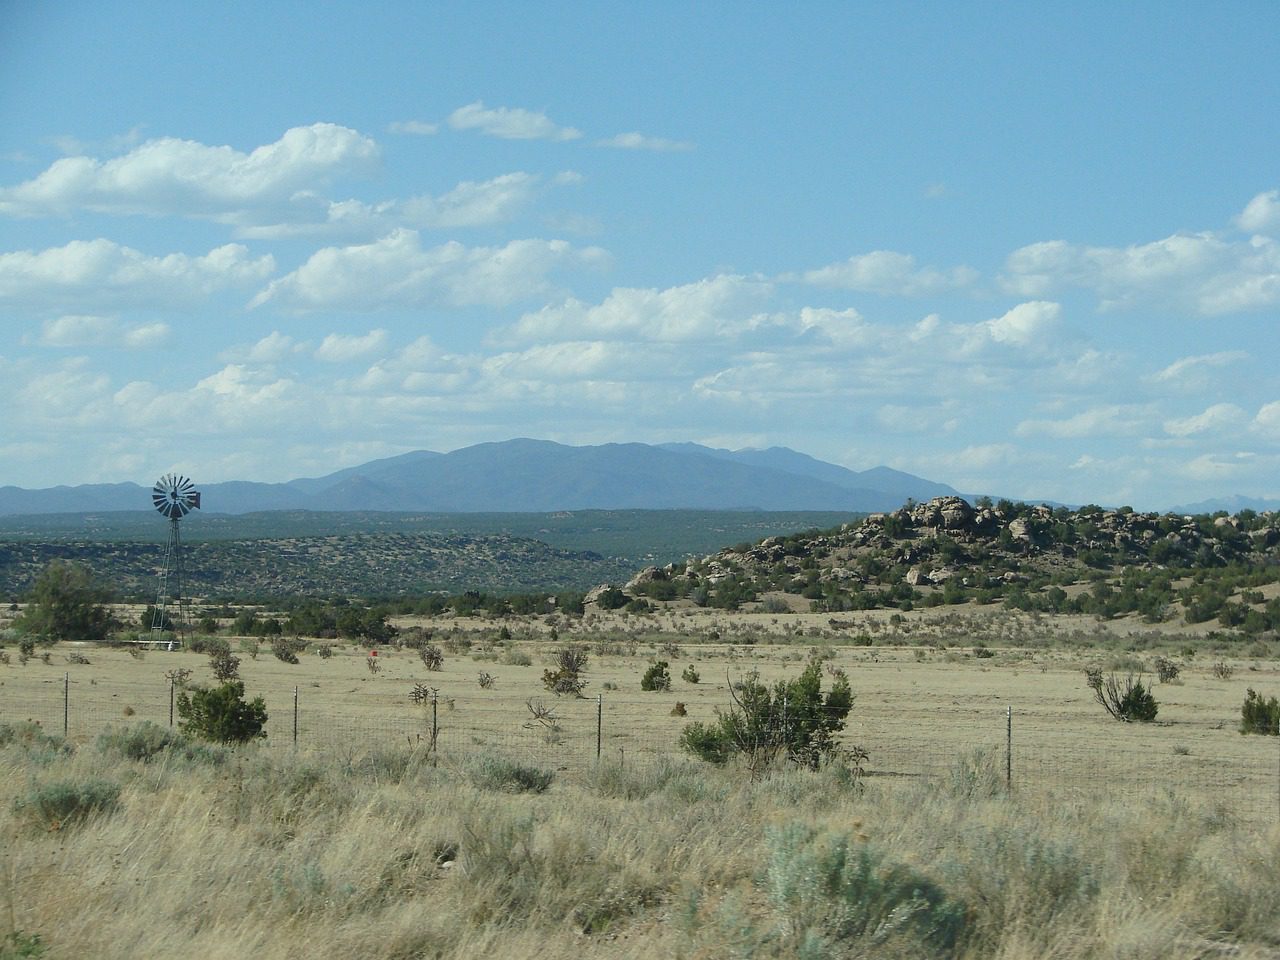 A remote ranch scene in New Mexico